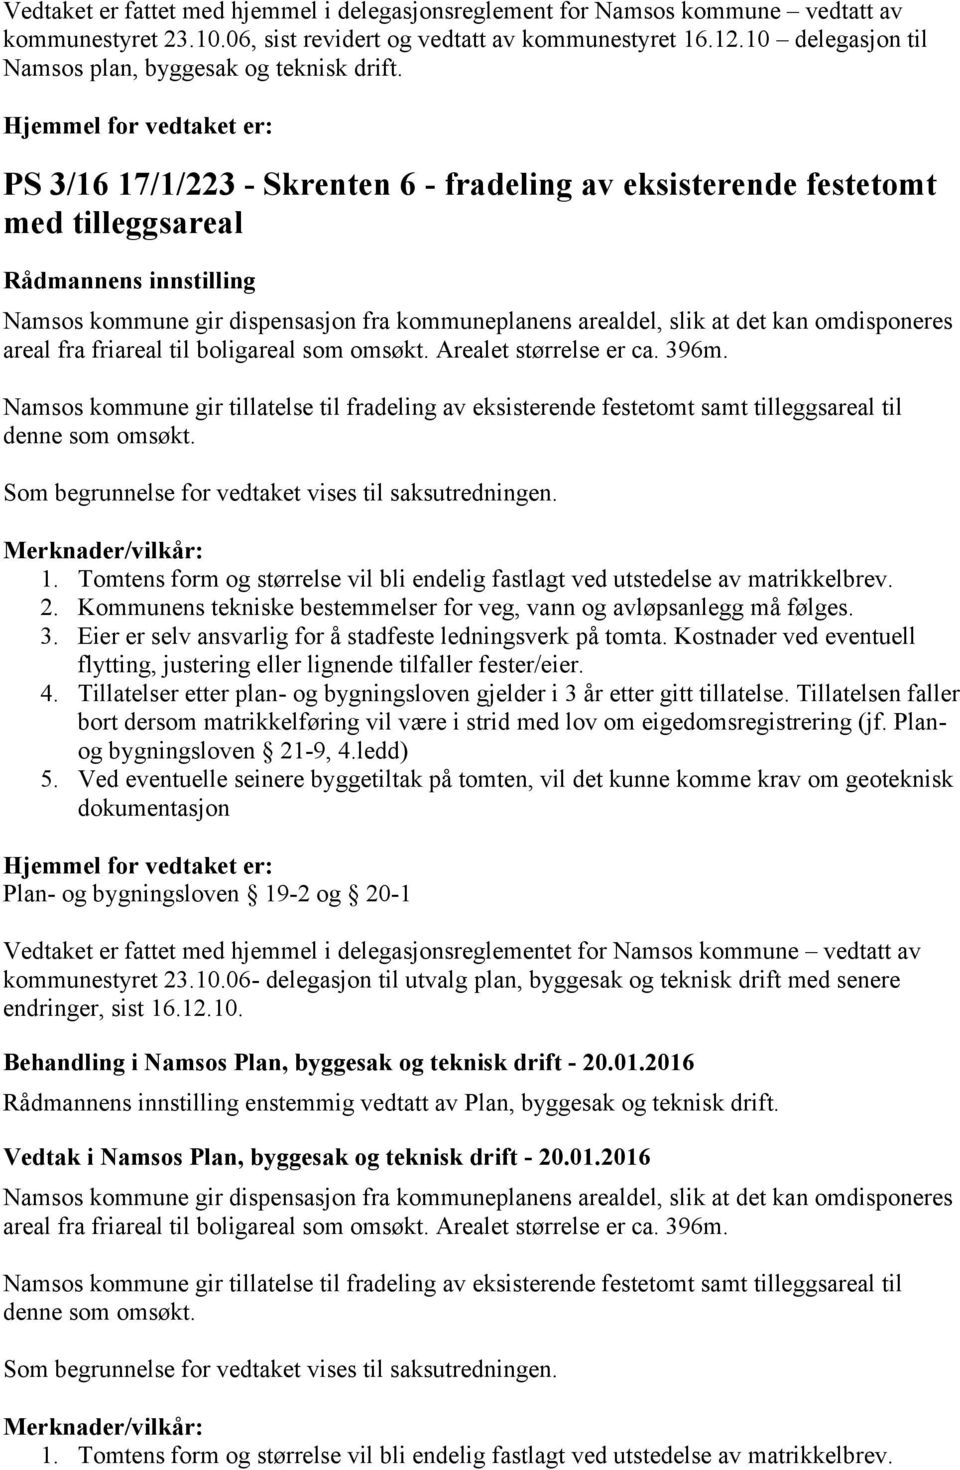 PS 3/16 17/1/223 - Skrenten 6 - fradeling av eksisterende festetomt med tilleggsareal Namsos kommune gir dispensasjon fra kommuneplanens arealdel, slik at det kan omdisponeres areal fra friareal til